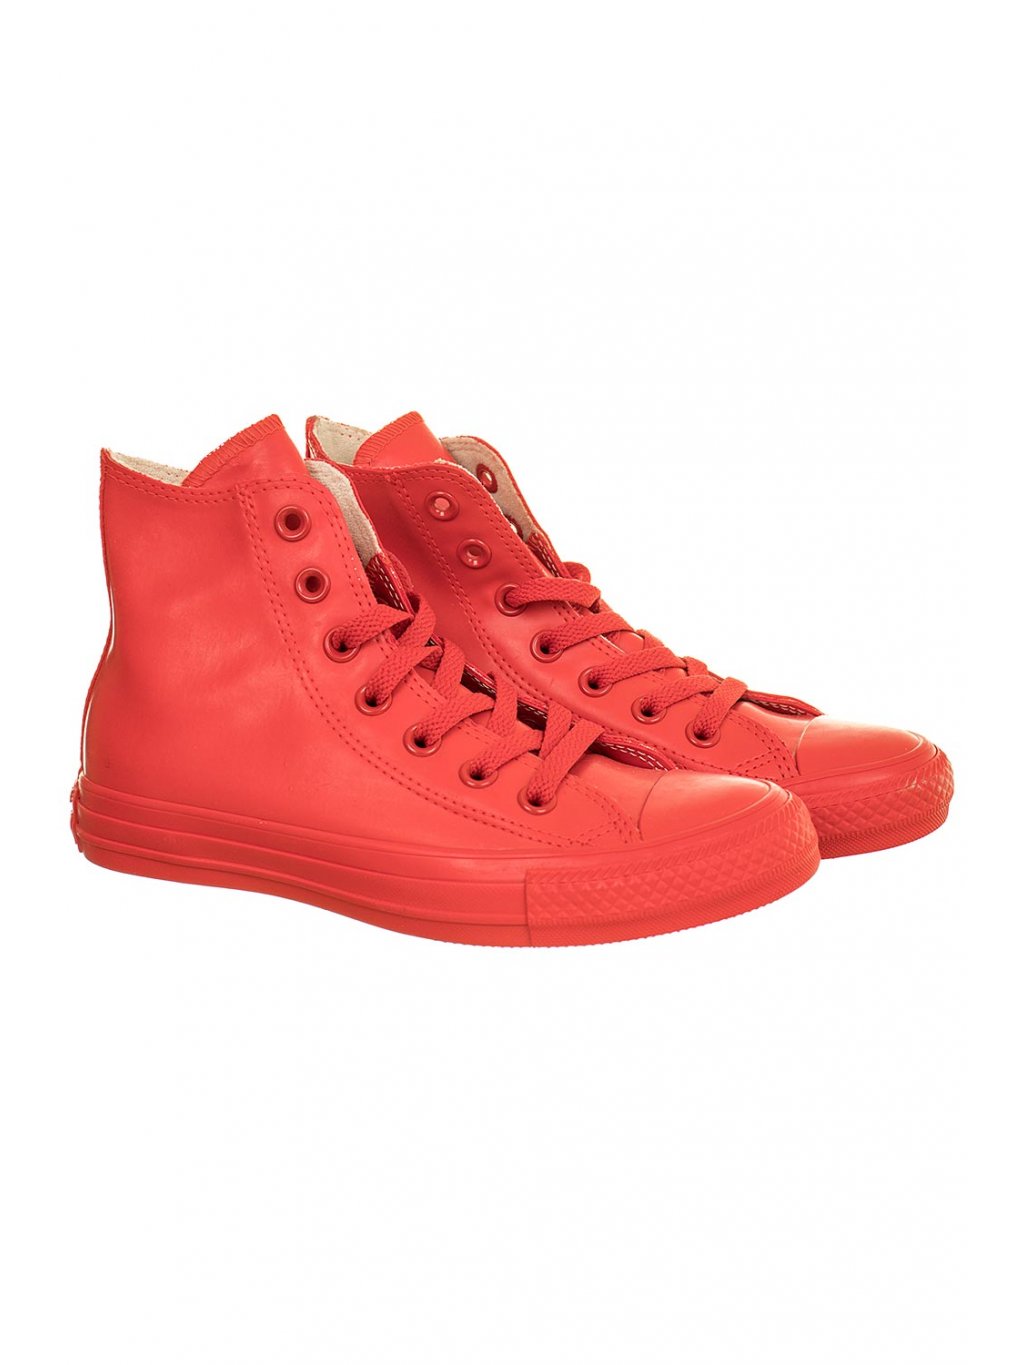 Converse dámské kotníkové boty červené - FASHION AVENUE